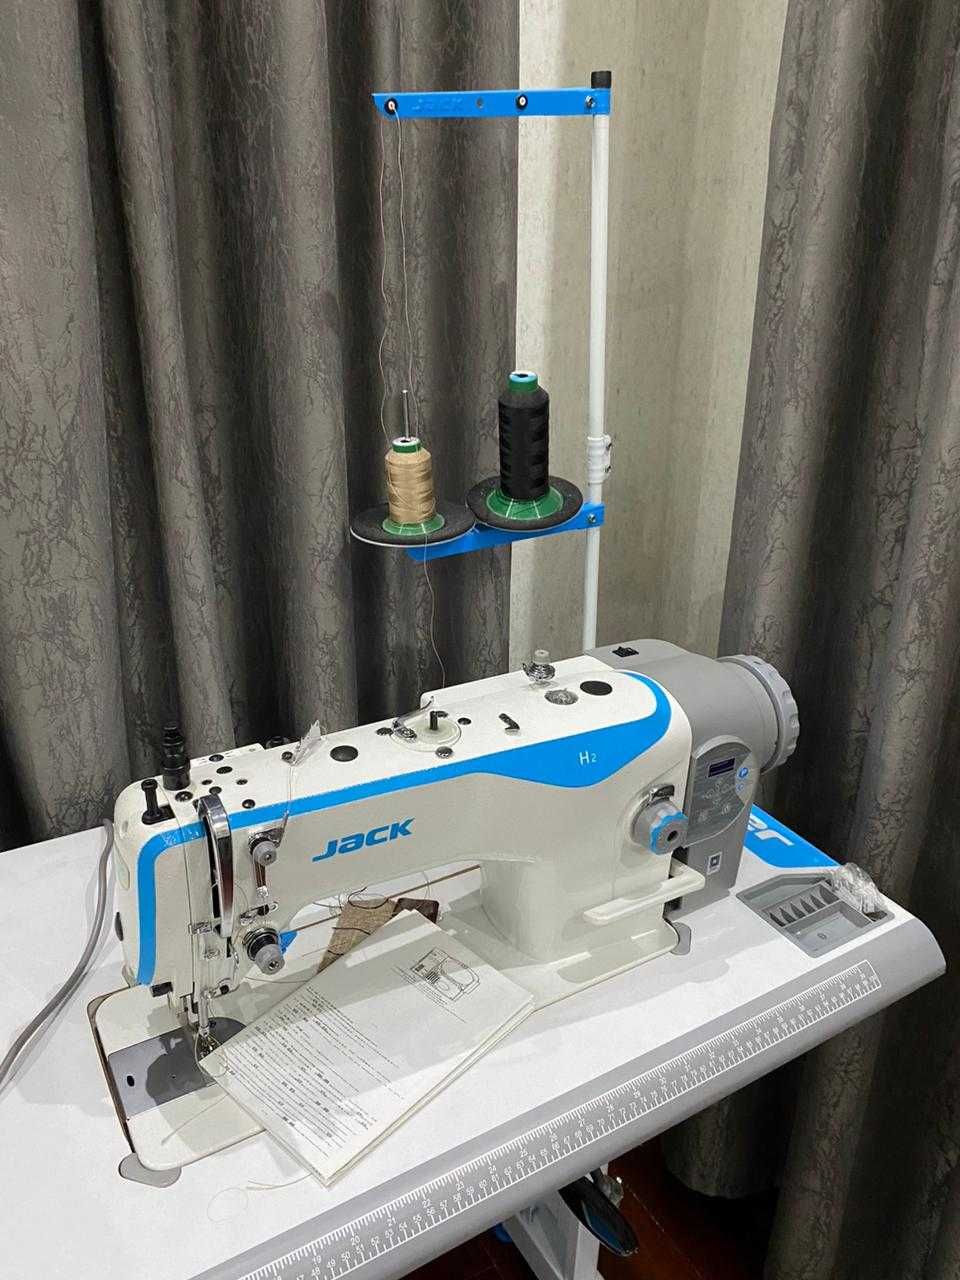 Швейная машинка JAKE H2, новая. Не пользовались.